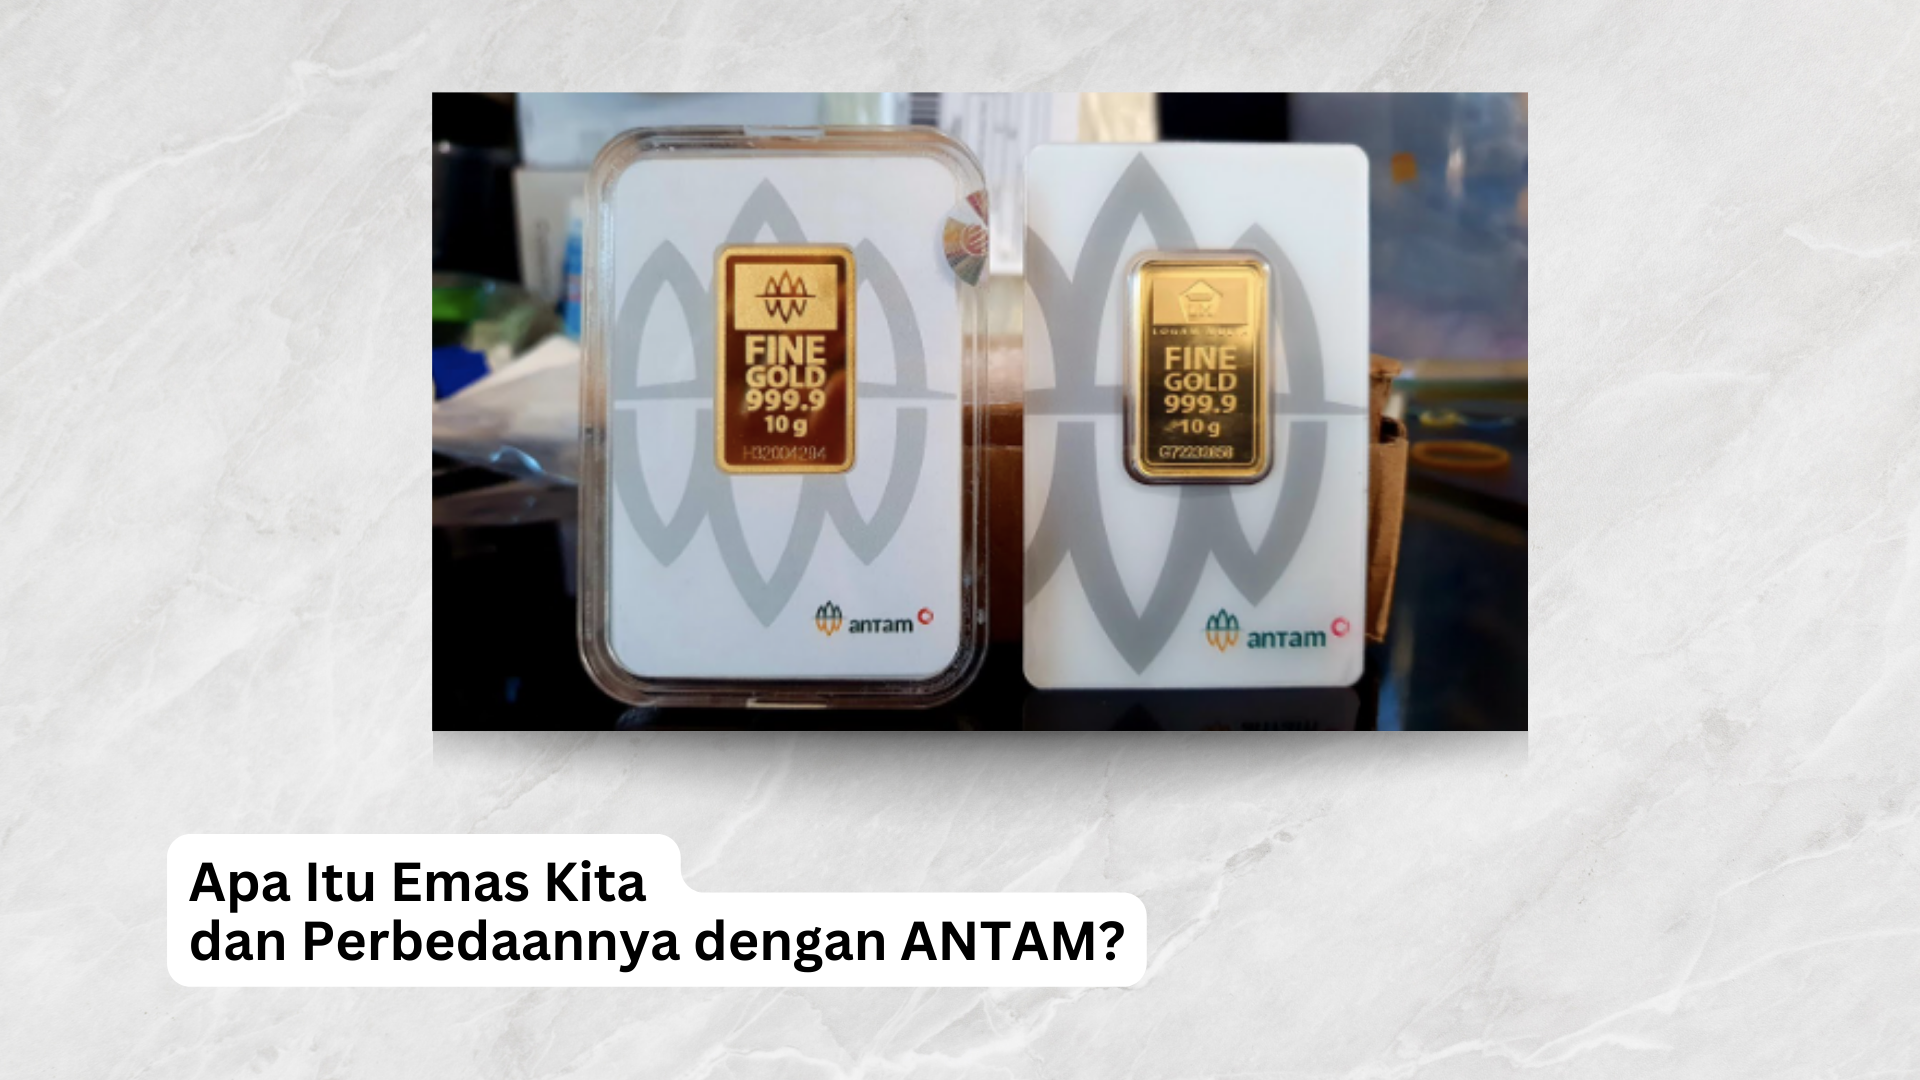 You are currently viewing Apa Itu Emas Kita dan Perbedaannya dengan ANTAM?